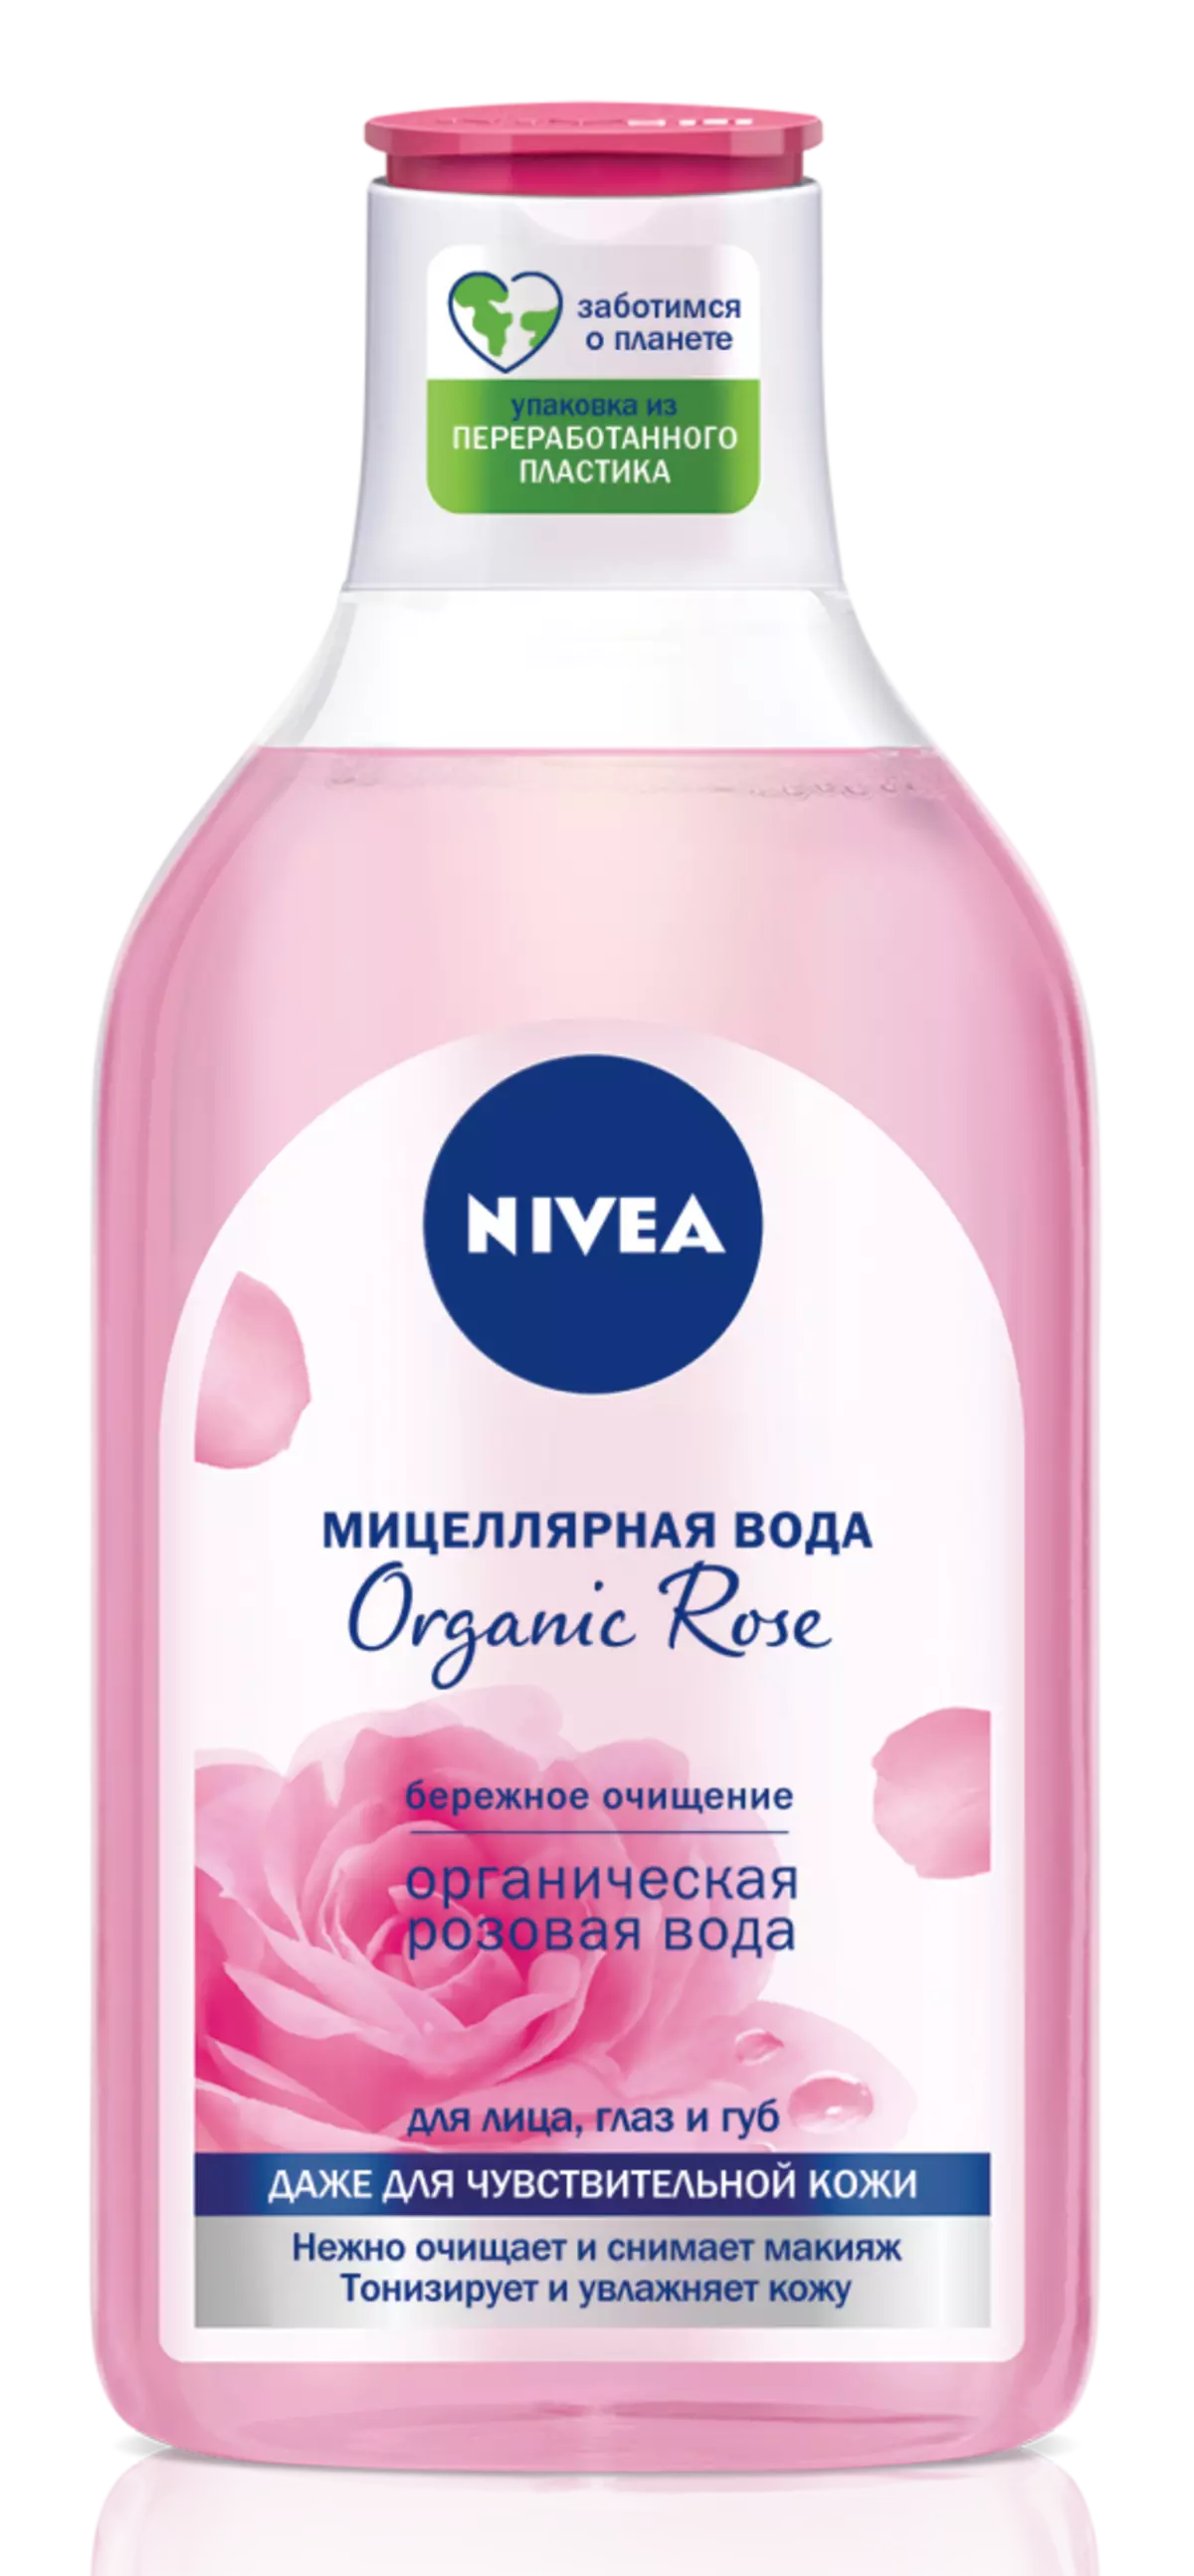 Сила на науката и природата: нова органична розова линия от NIVEA с розова вода и хиалурон 18545_1